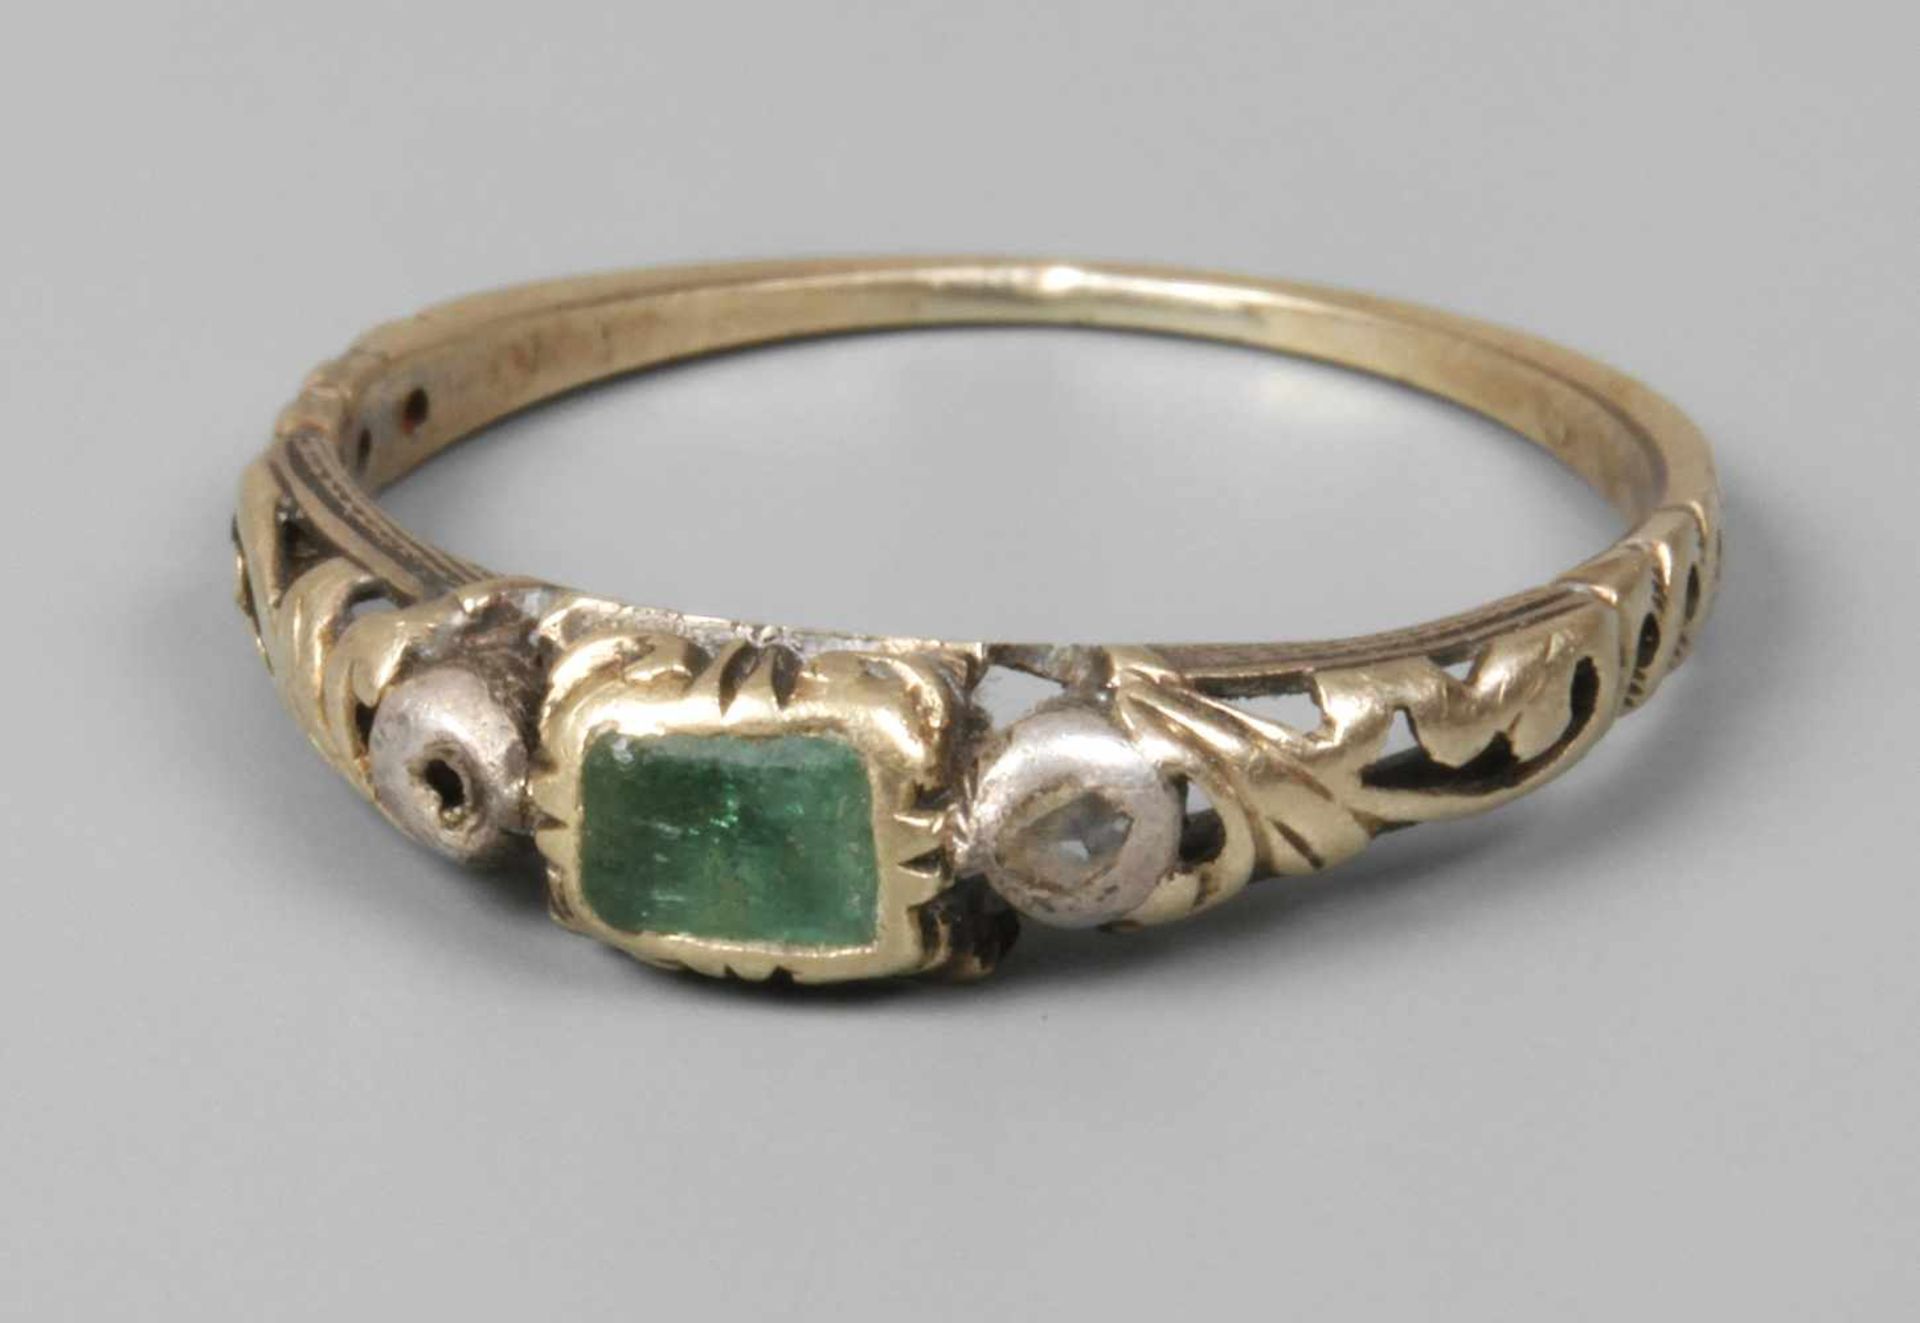 Historischer Ringwohl 17. Jh., Gelbgold, mindestens 585/1000, zarter, filigran gearbeiteter Ring,